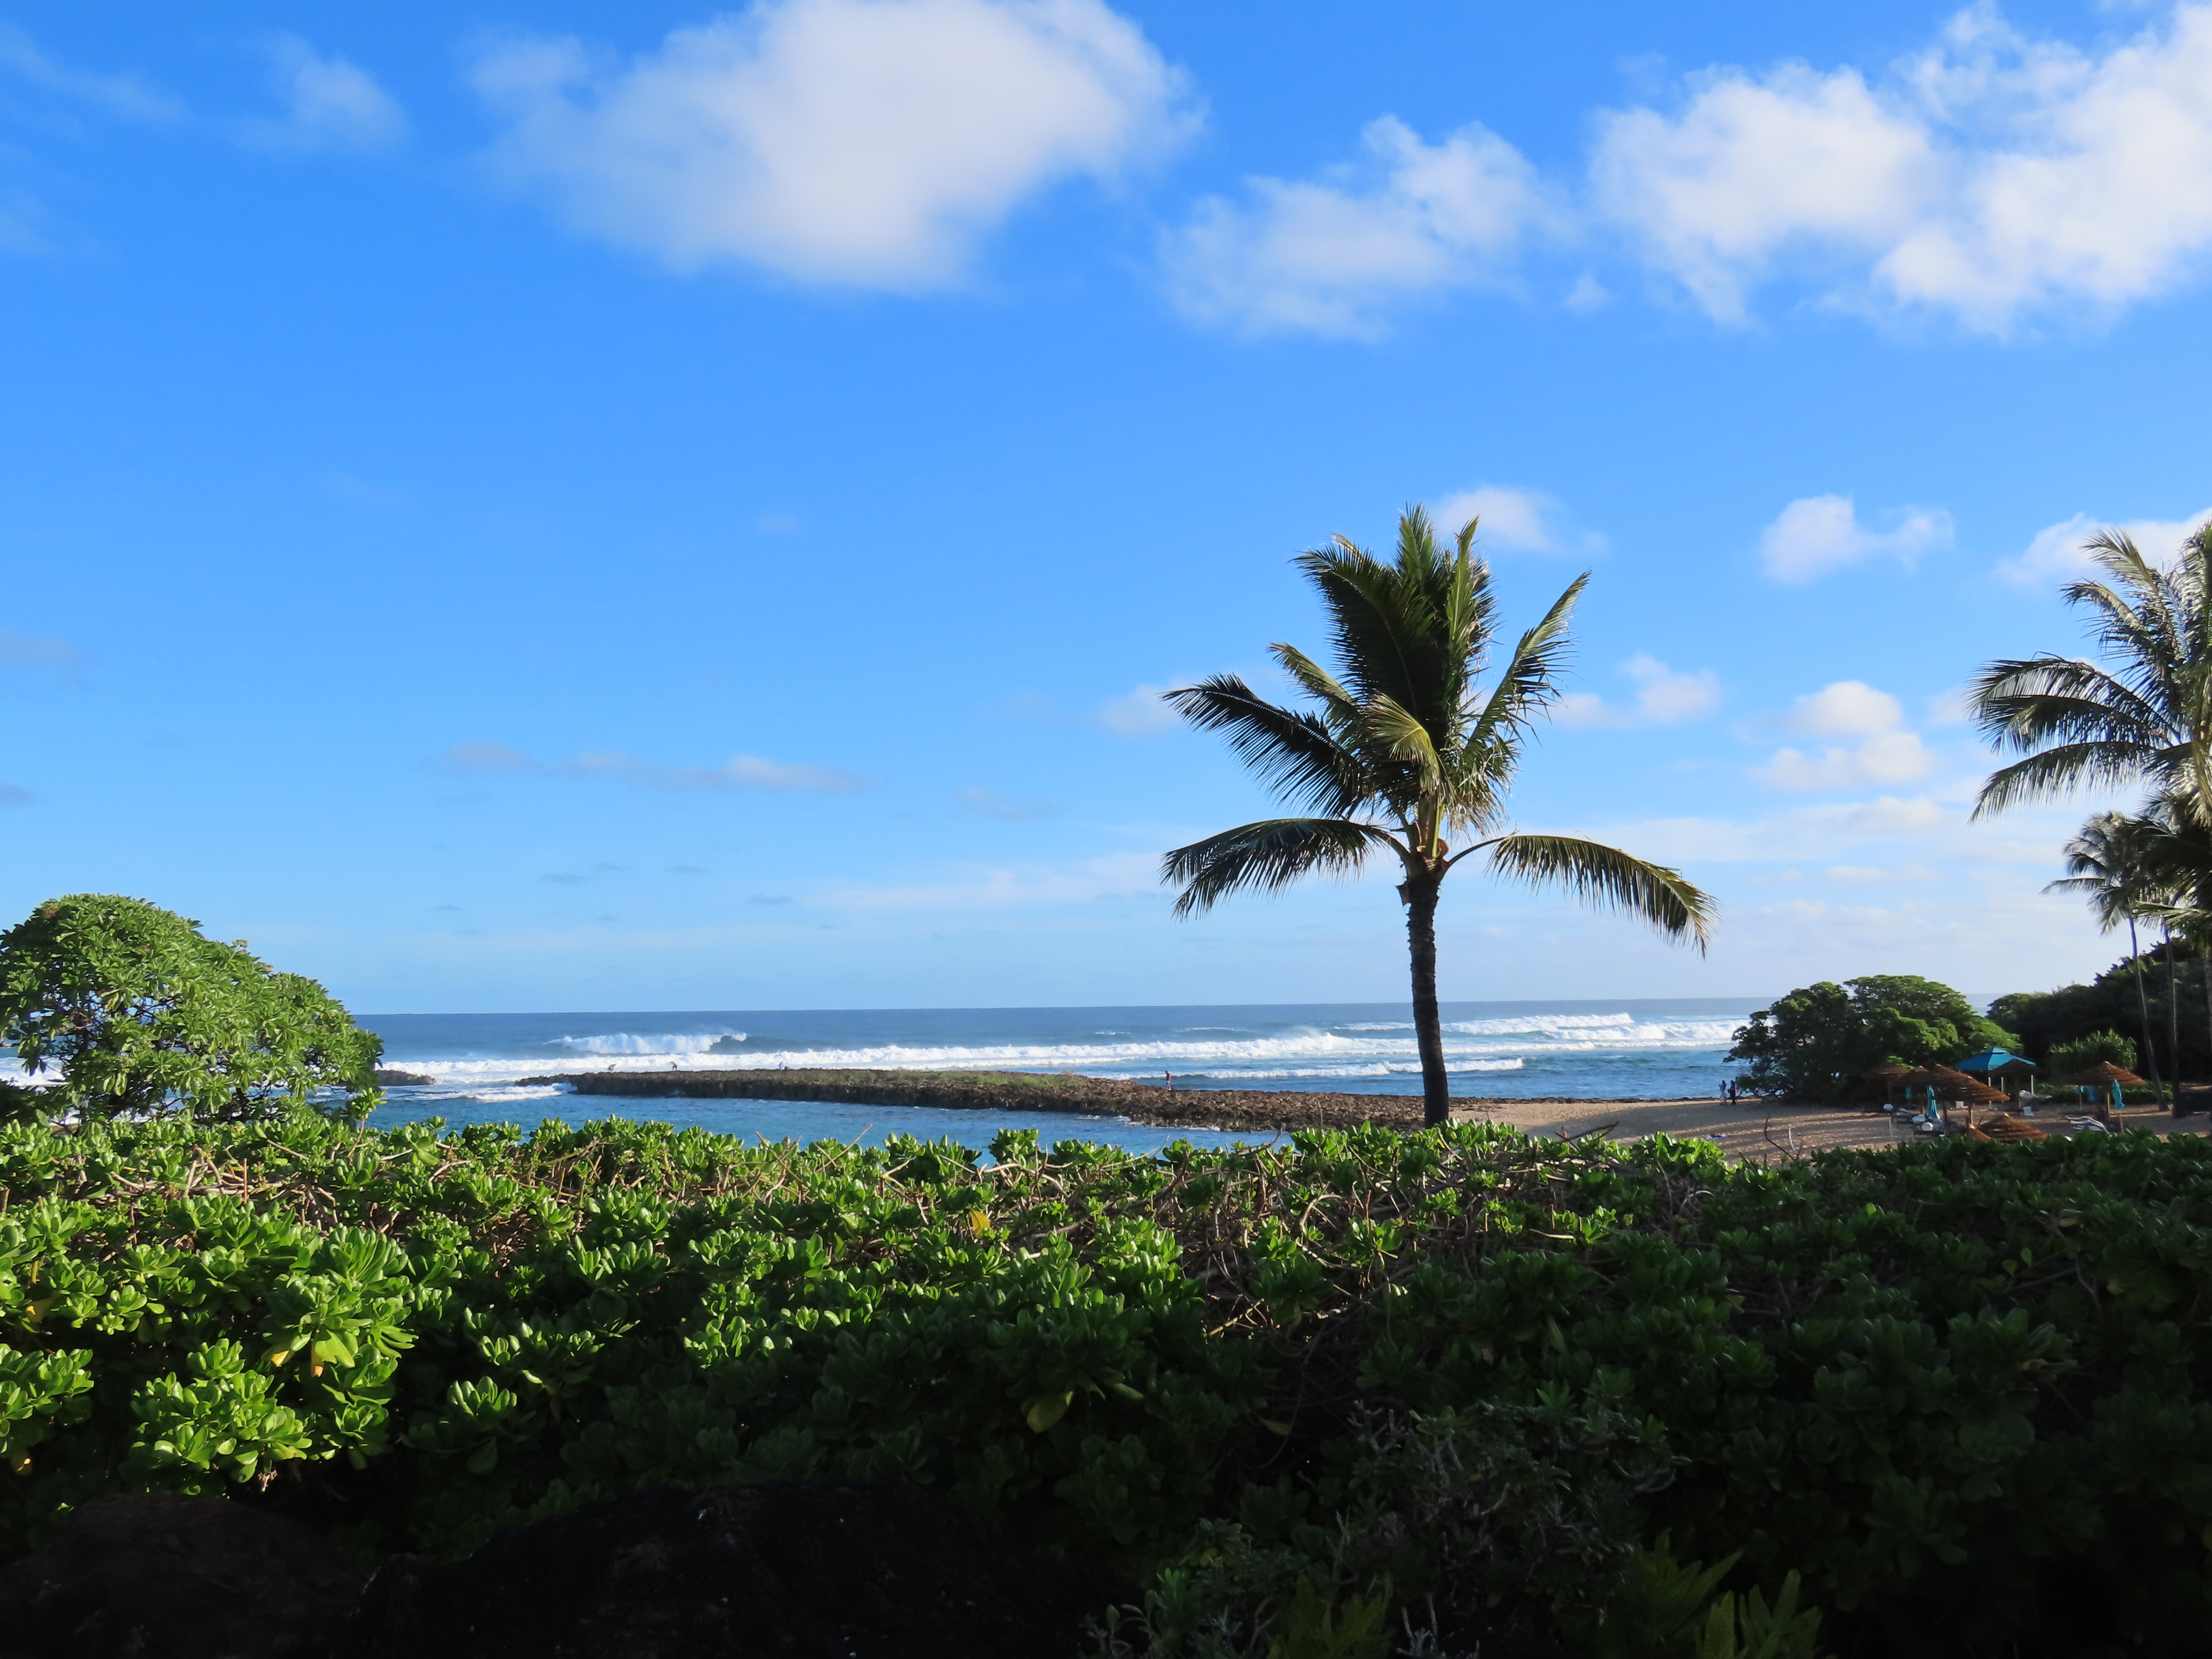 Kawela Bay on the northern shore of the Hawaiian island of Oahu